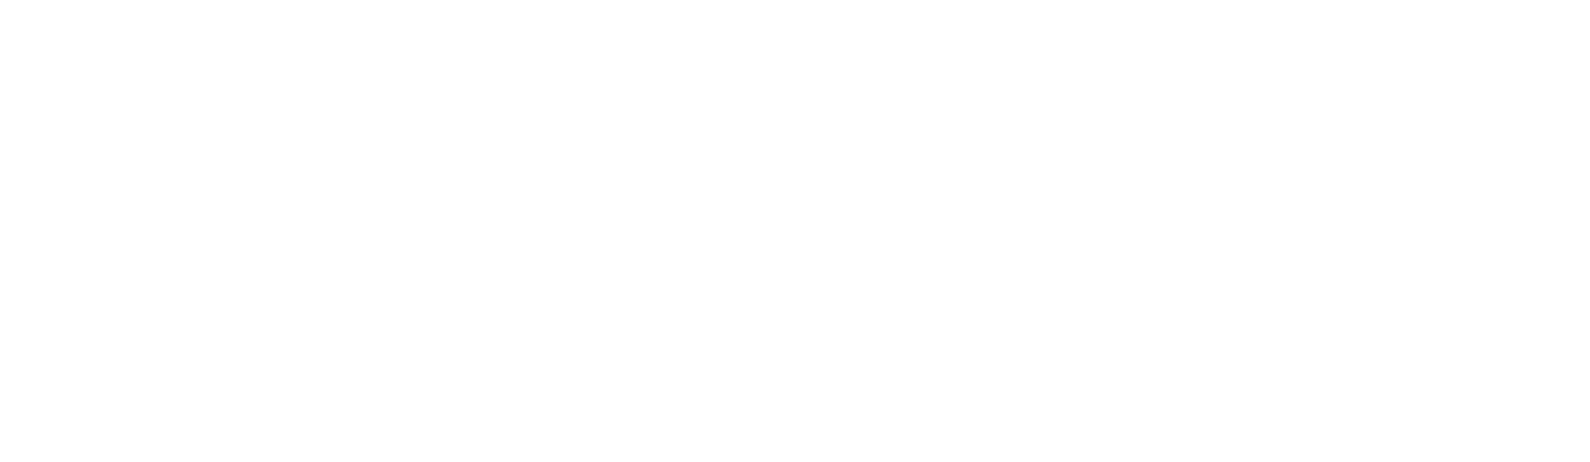 Jushi Holdings Logo groß für dunkle Hintergründe (transparentes PNG)